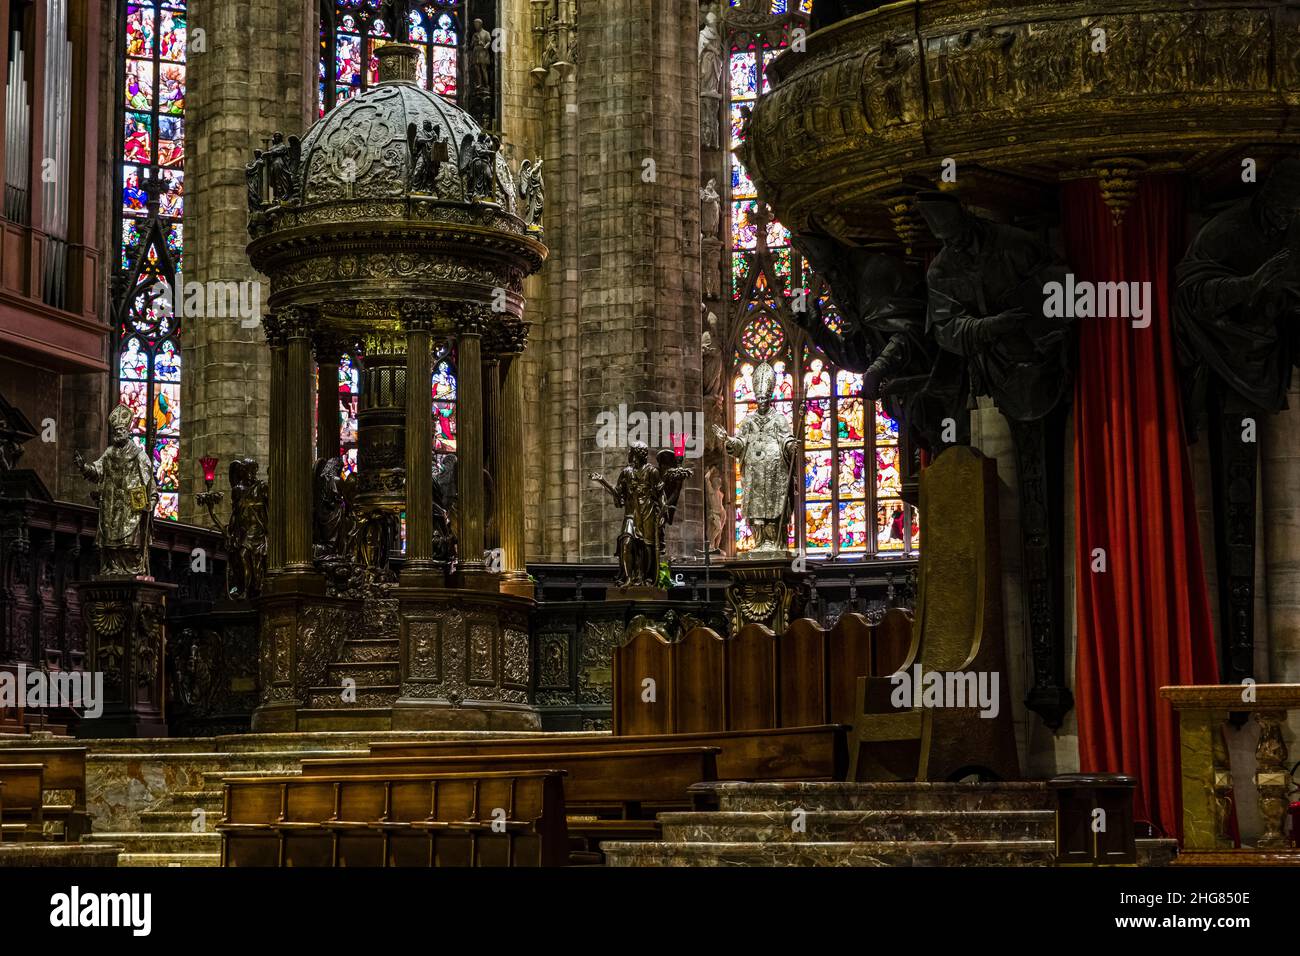 Intérieur de la cathédrale de Milan, Duomo di Milano, avec de magnifiques pulfosses, statues et vitraux colorés au plomb. Banque D'Images